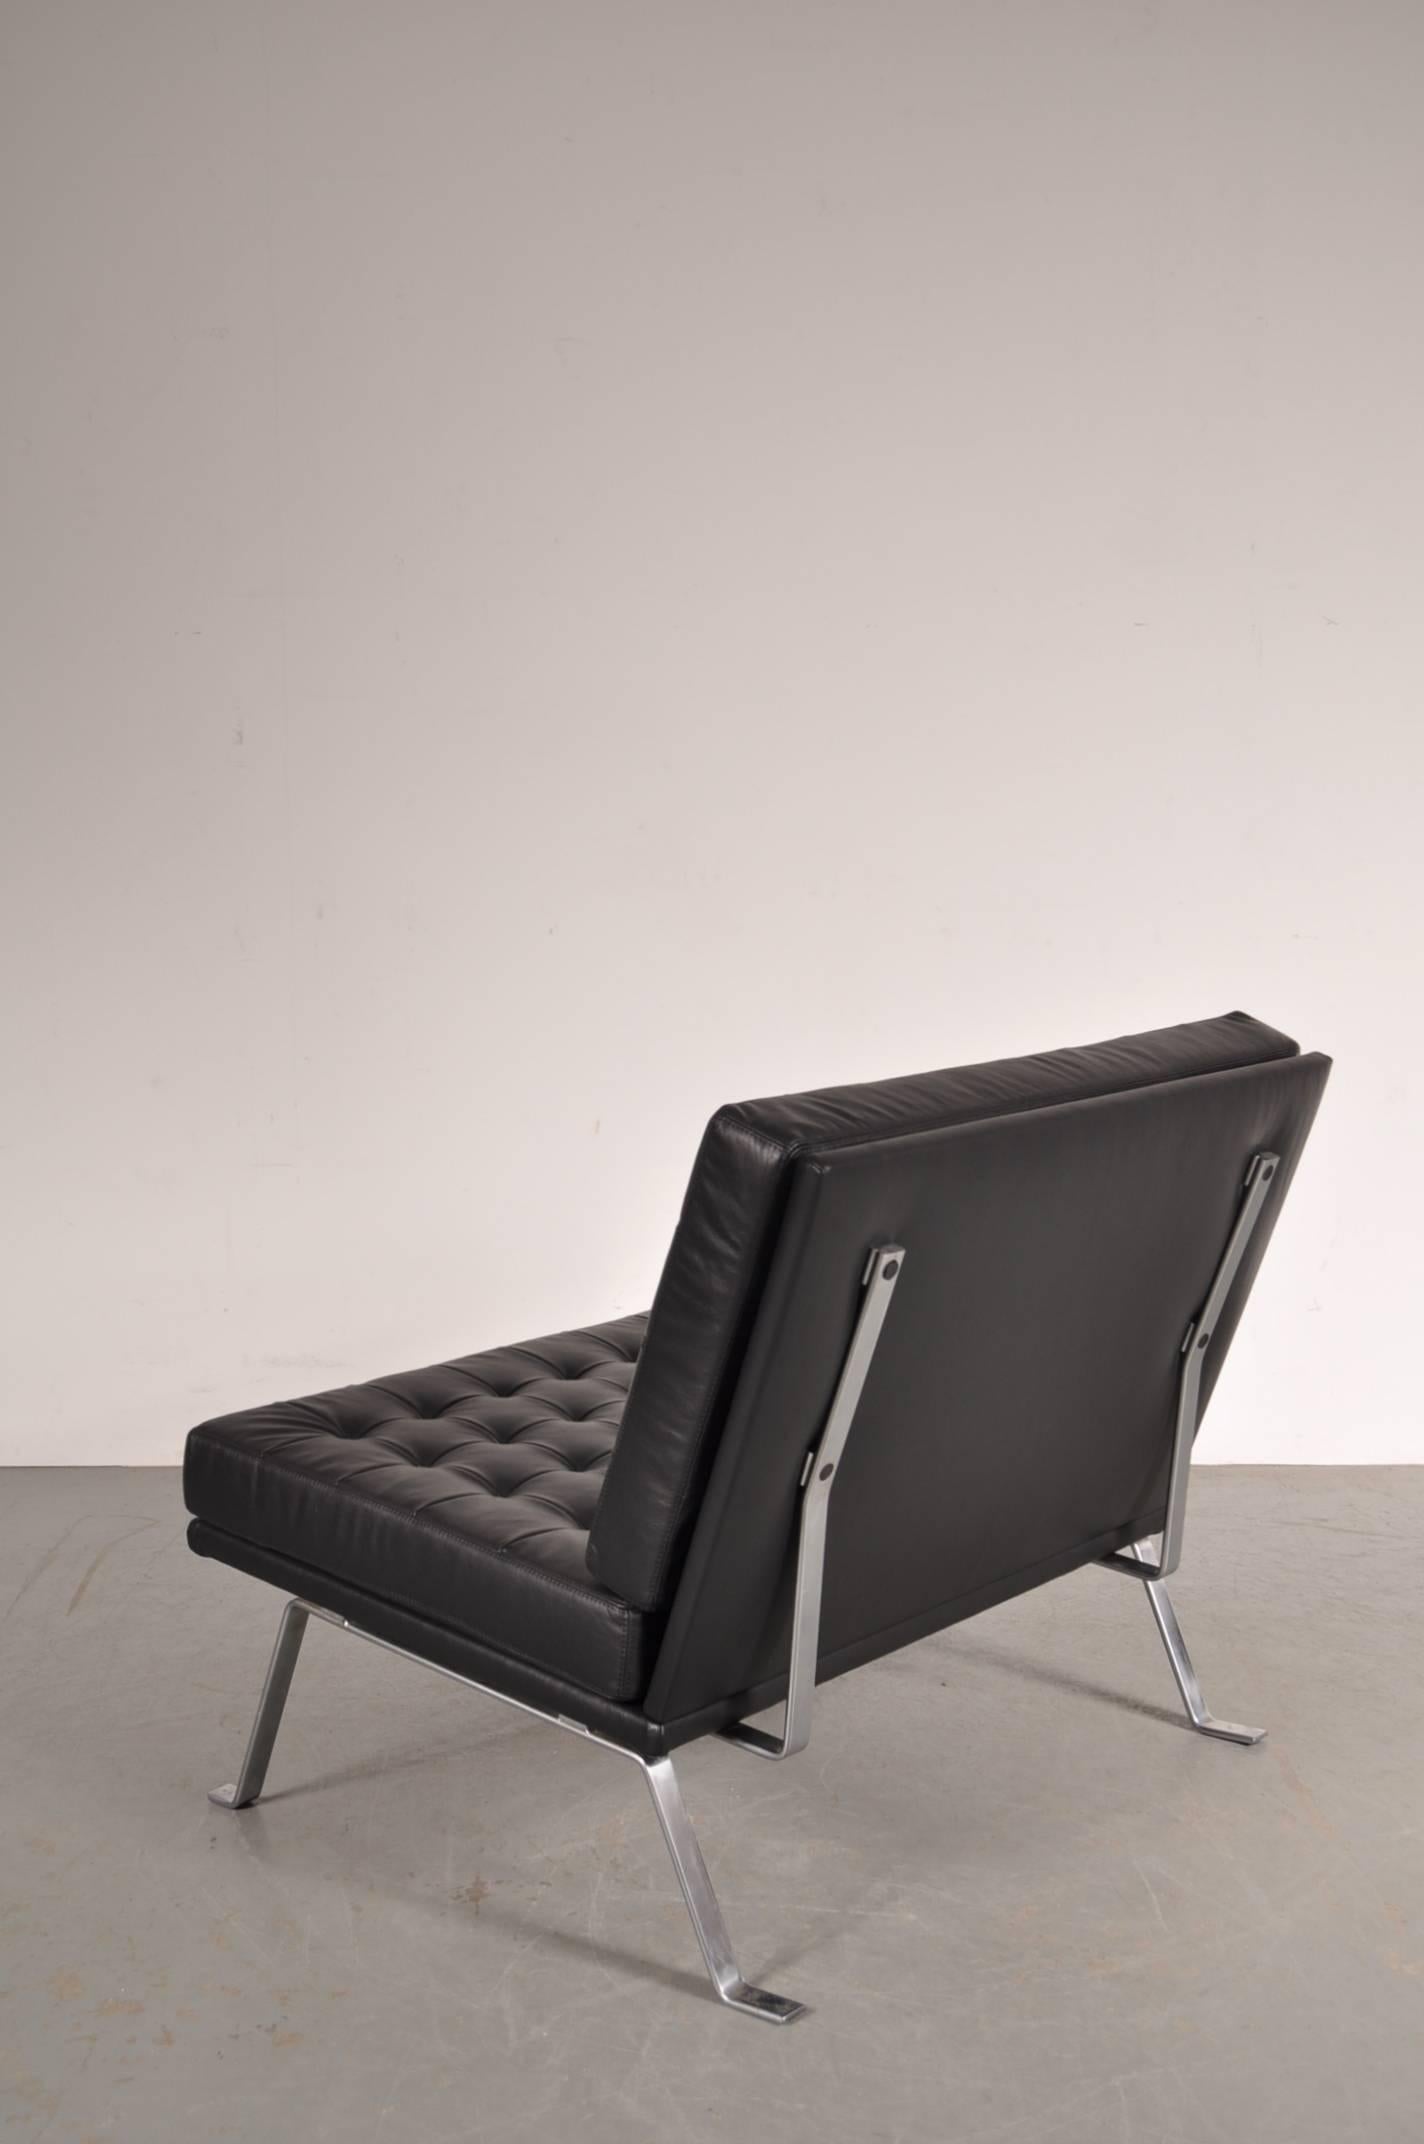 Superbe causeuse conçue par Hein Salomonson, fabriquée par AP Polak, Pays-Bas, vers 1950.

Cette chaise est une pièce très populaire du design néerlandais, grâce à sa conception à la fois belle et minimaliste et à son grand confort d'assise. Il